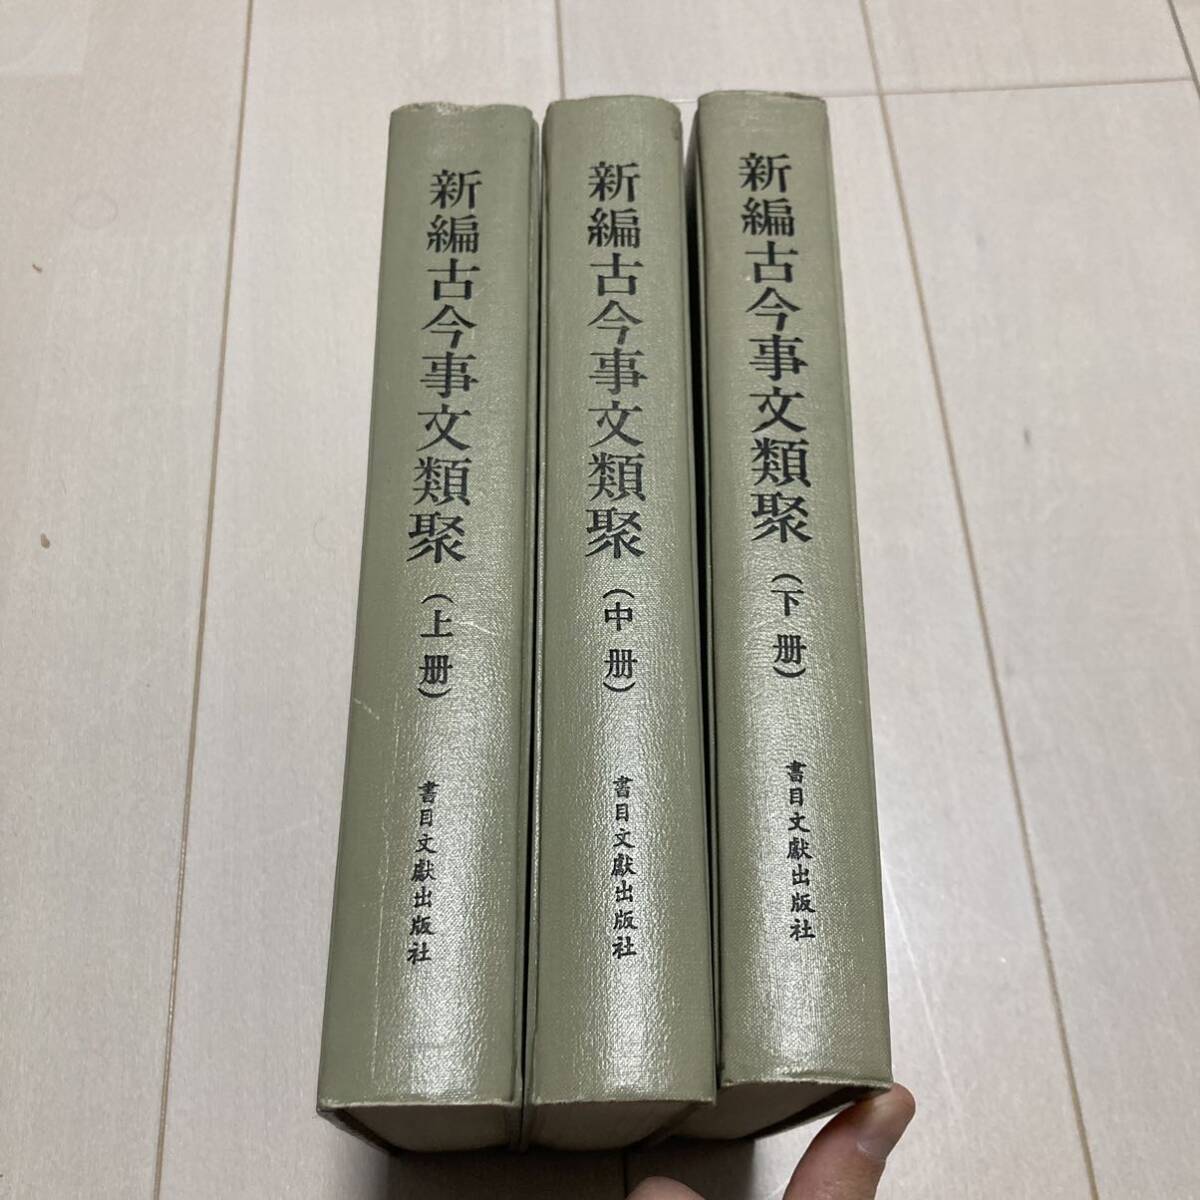 J 1991 год выпуск Tang книга@. печать версия . оборудование книга@ China документ [ новый сборник старый сейчас . документ вид .] все 3 шт. .